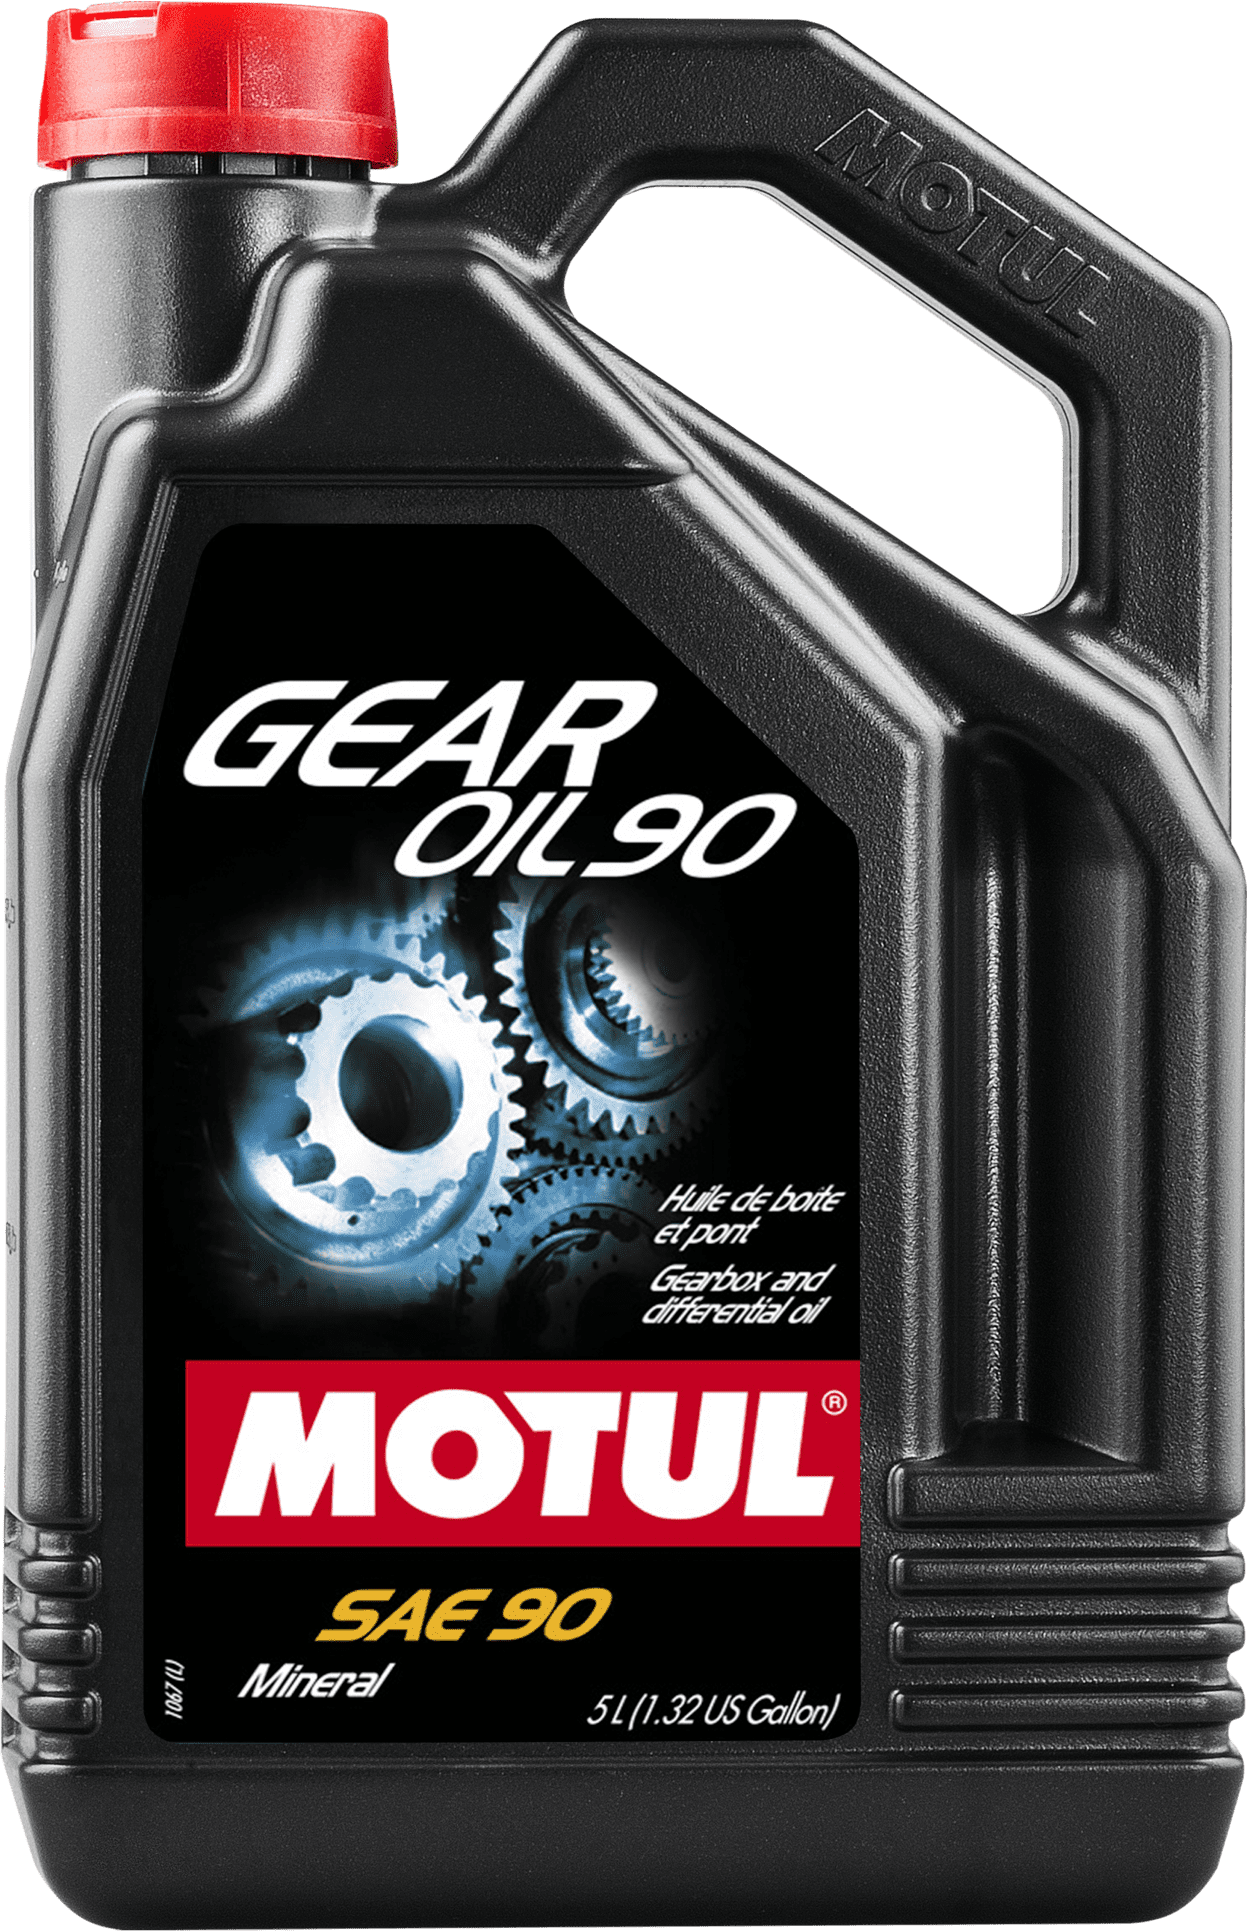 Motul Gear Oil 90, 5 lt